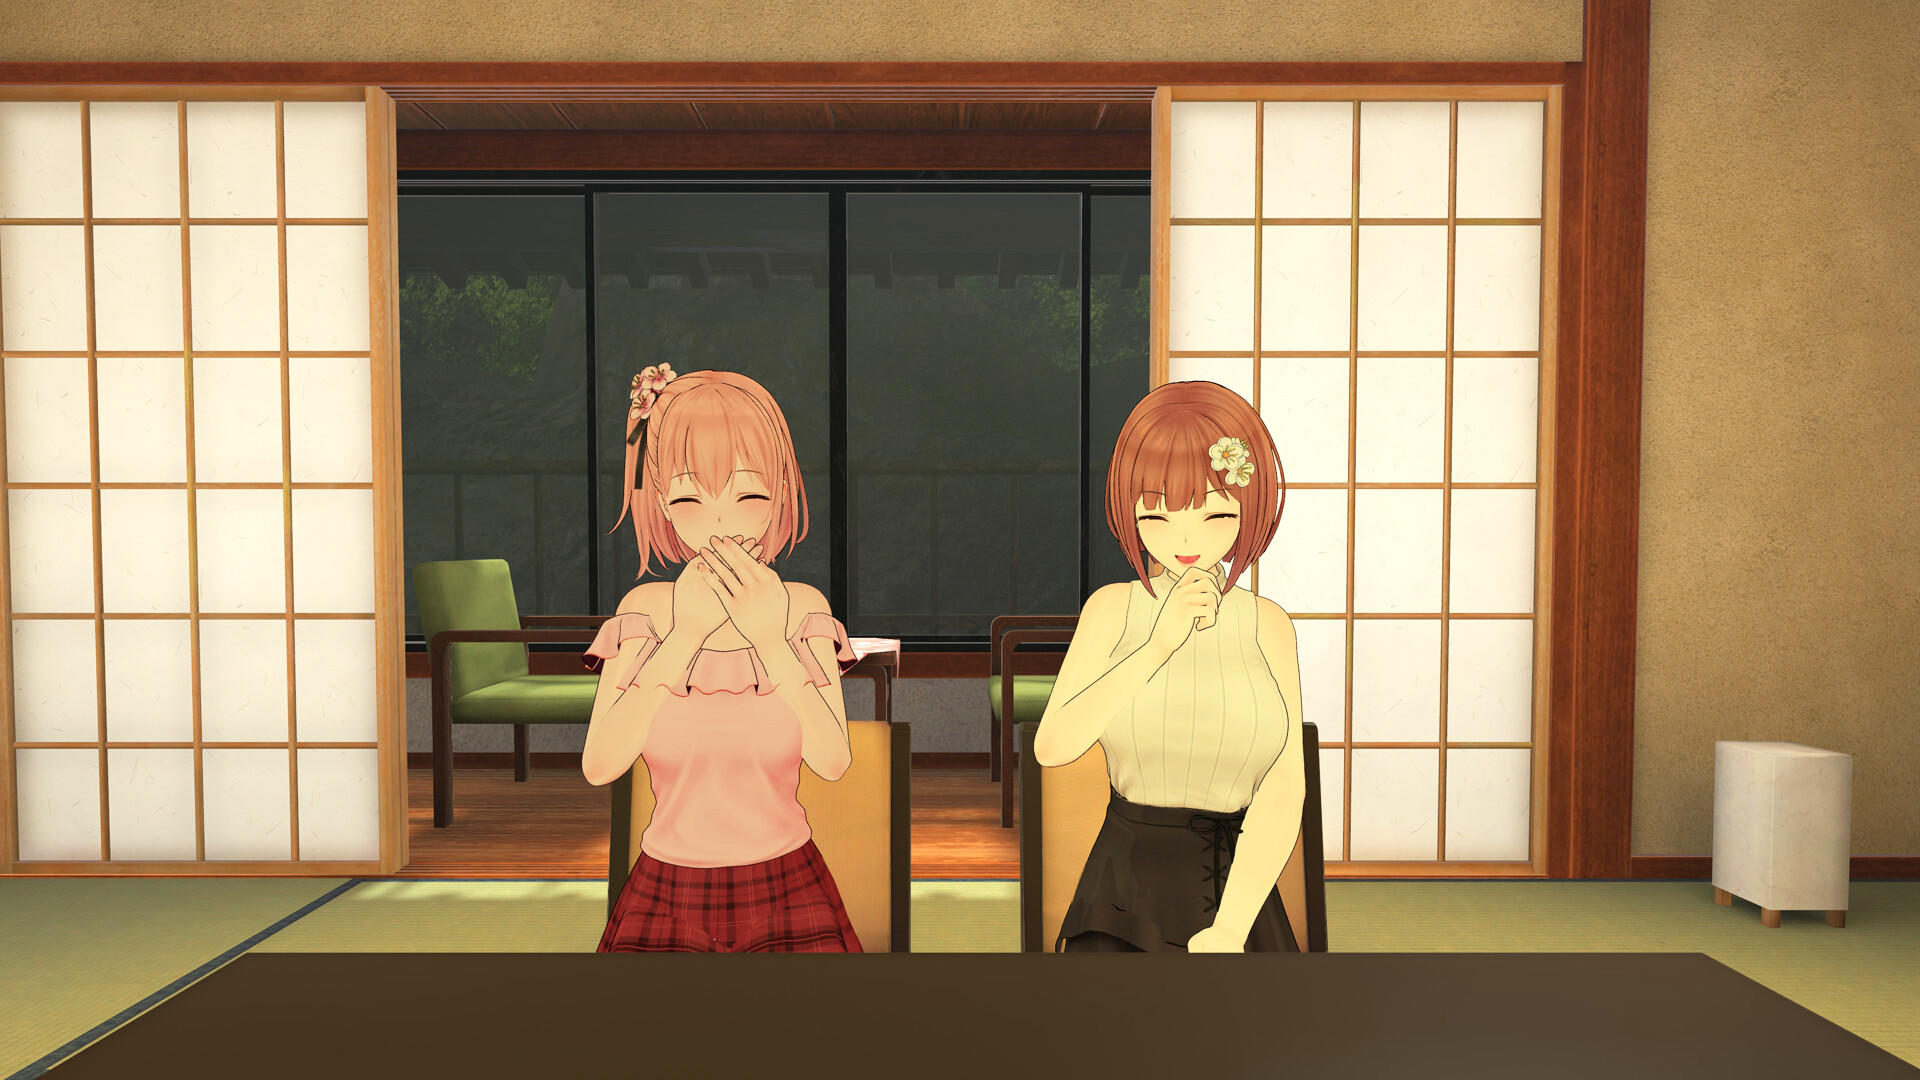 Koi-Koi: Love Blossoms Non-VR Edition 게임 스크린 샷